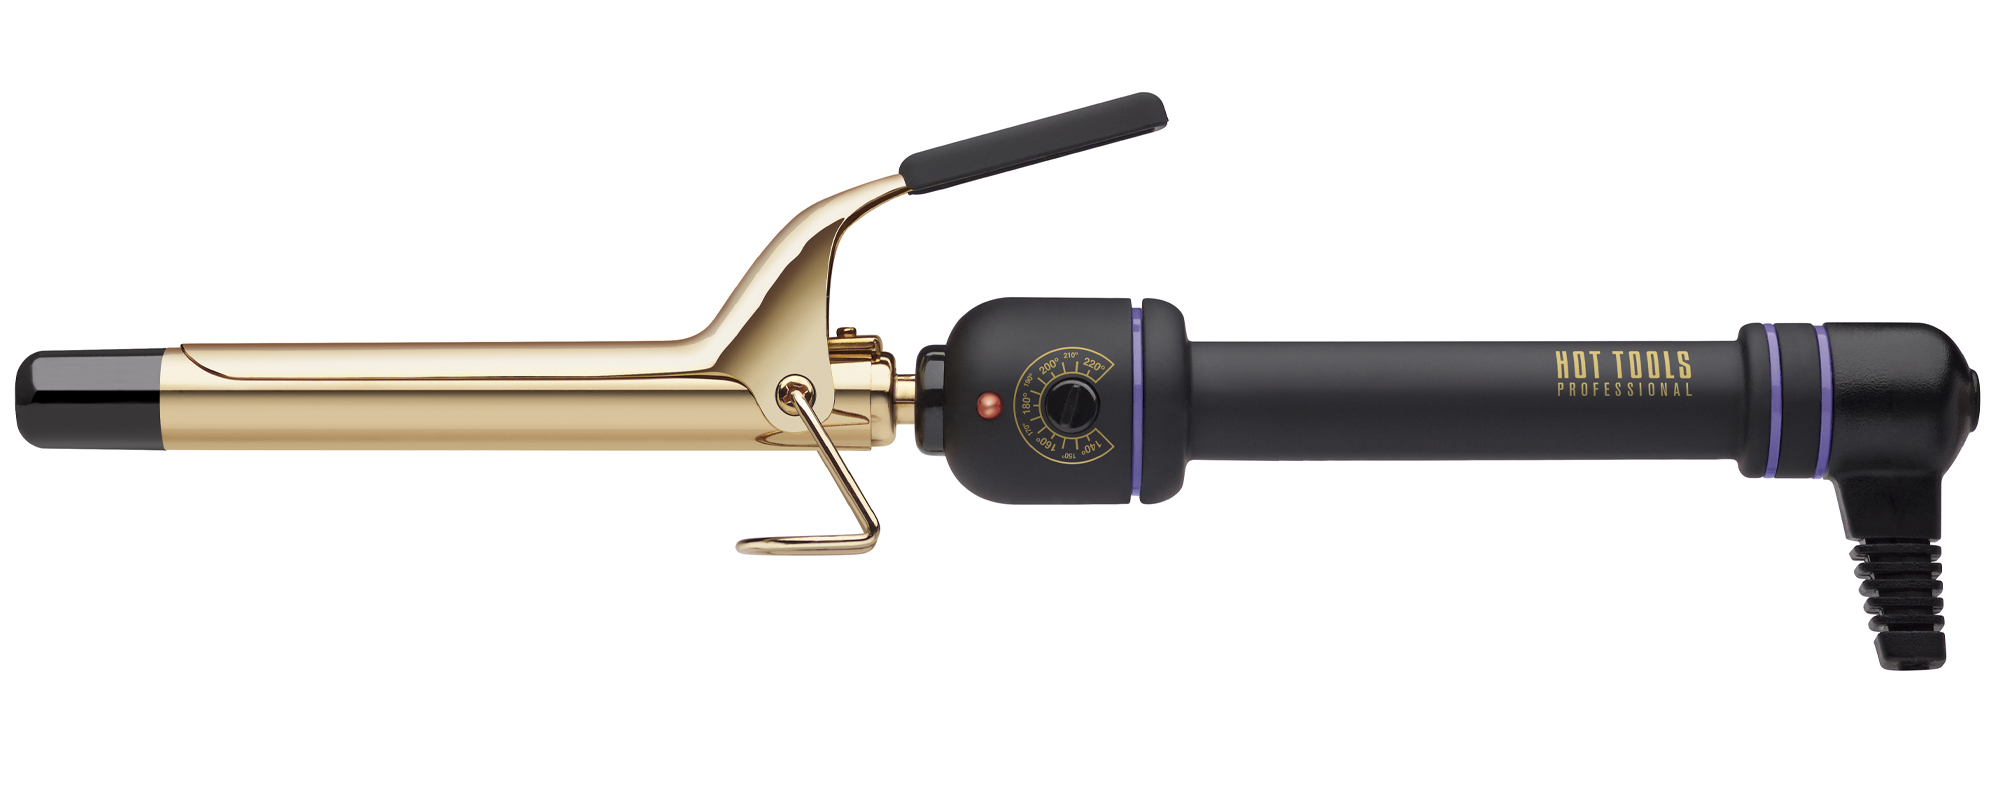 Купить Hot Tools Professional Стайлер 24K Gold, 19 мм (Hot Tools Professional, 24K Gold Salon Curling Irons)